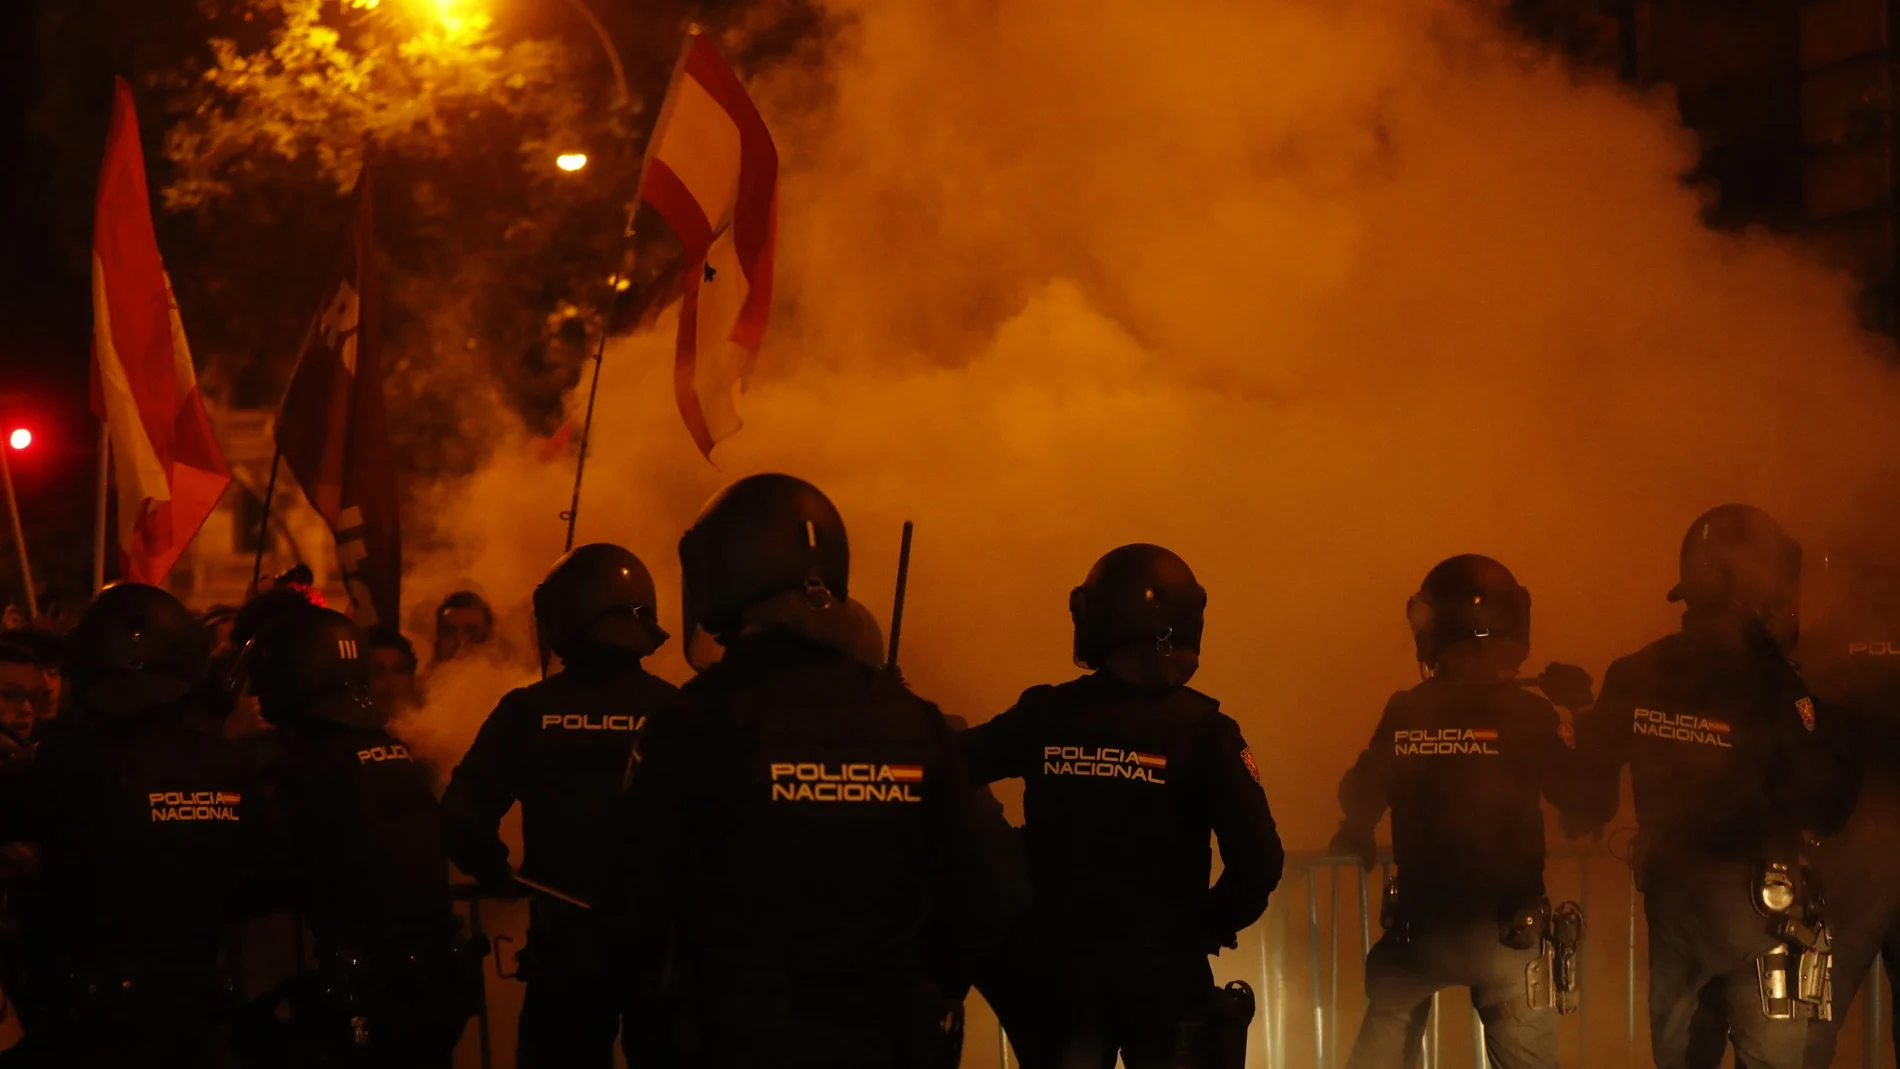  Agentes de la Policía Nacional intervienen durante la concentración frente a la sede del PSOE en la calle Ferraz, en Madrid, contra los pactos de investidura del presidente en funciones, Pedro Sánchez